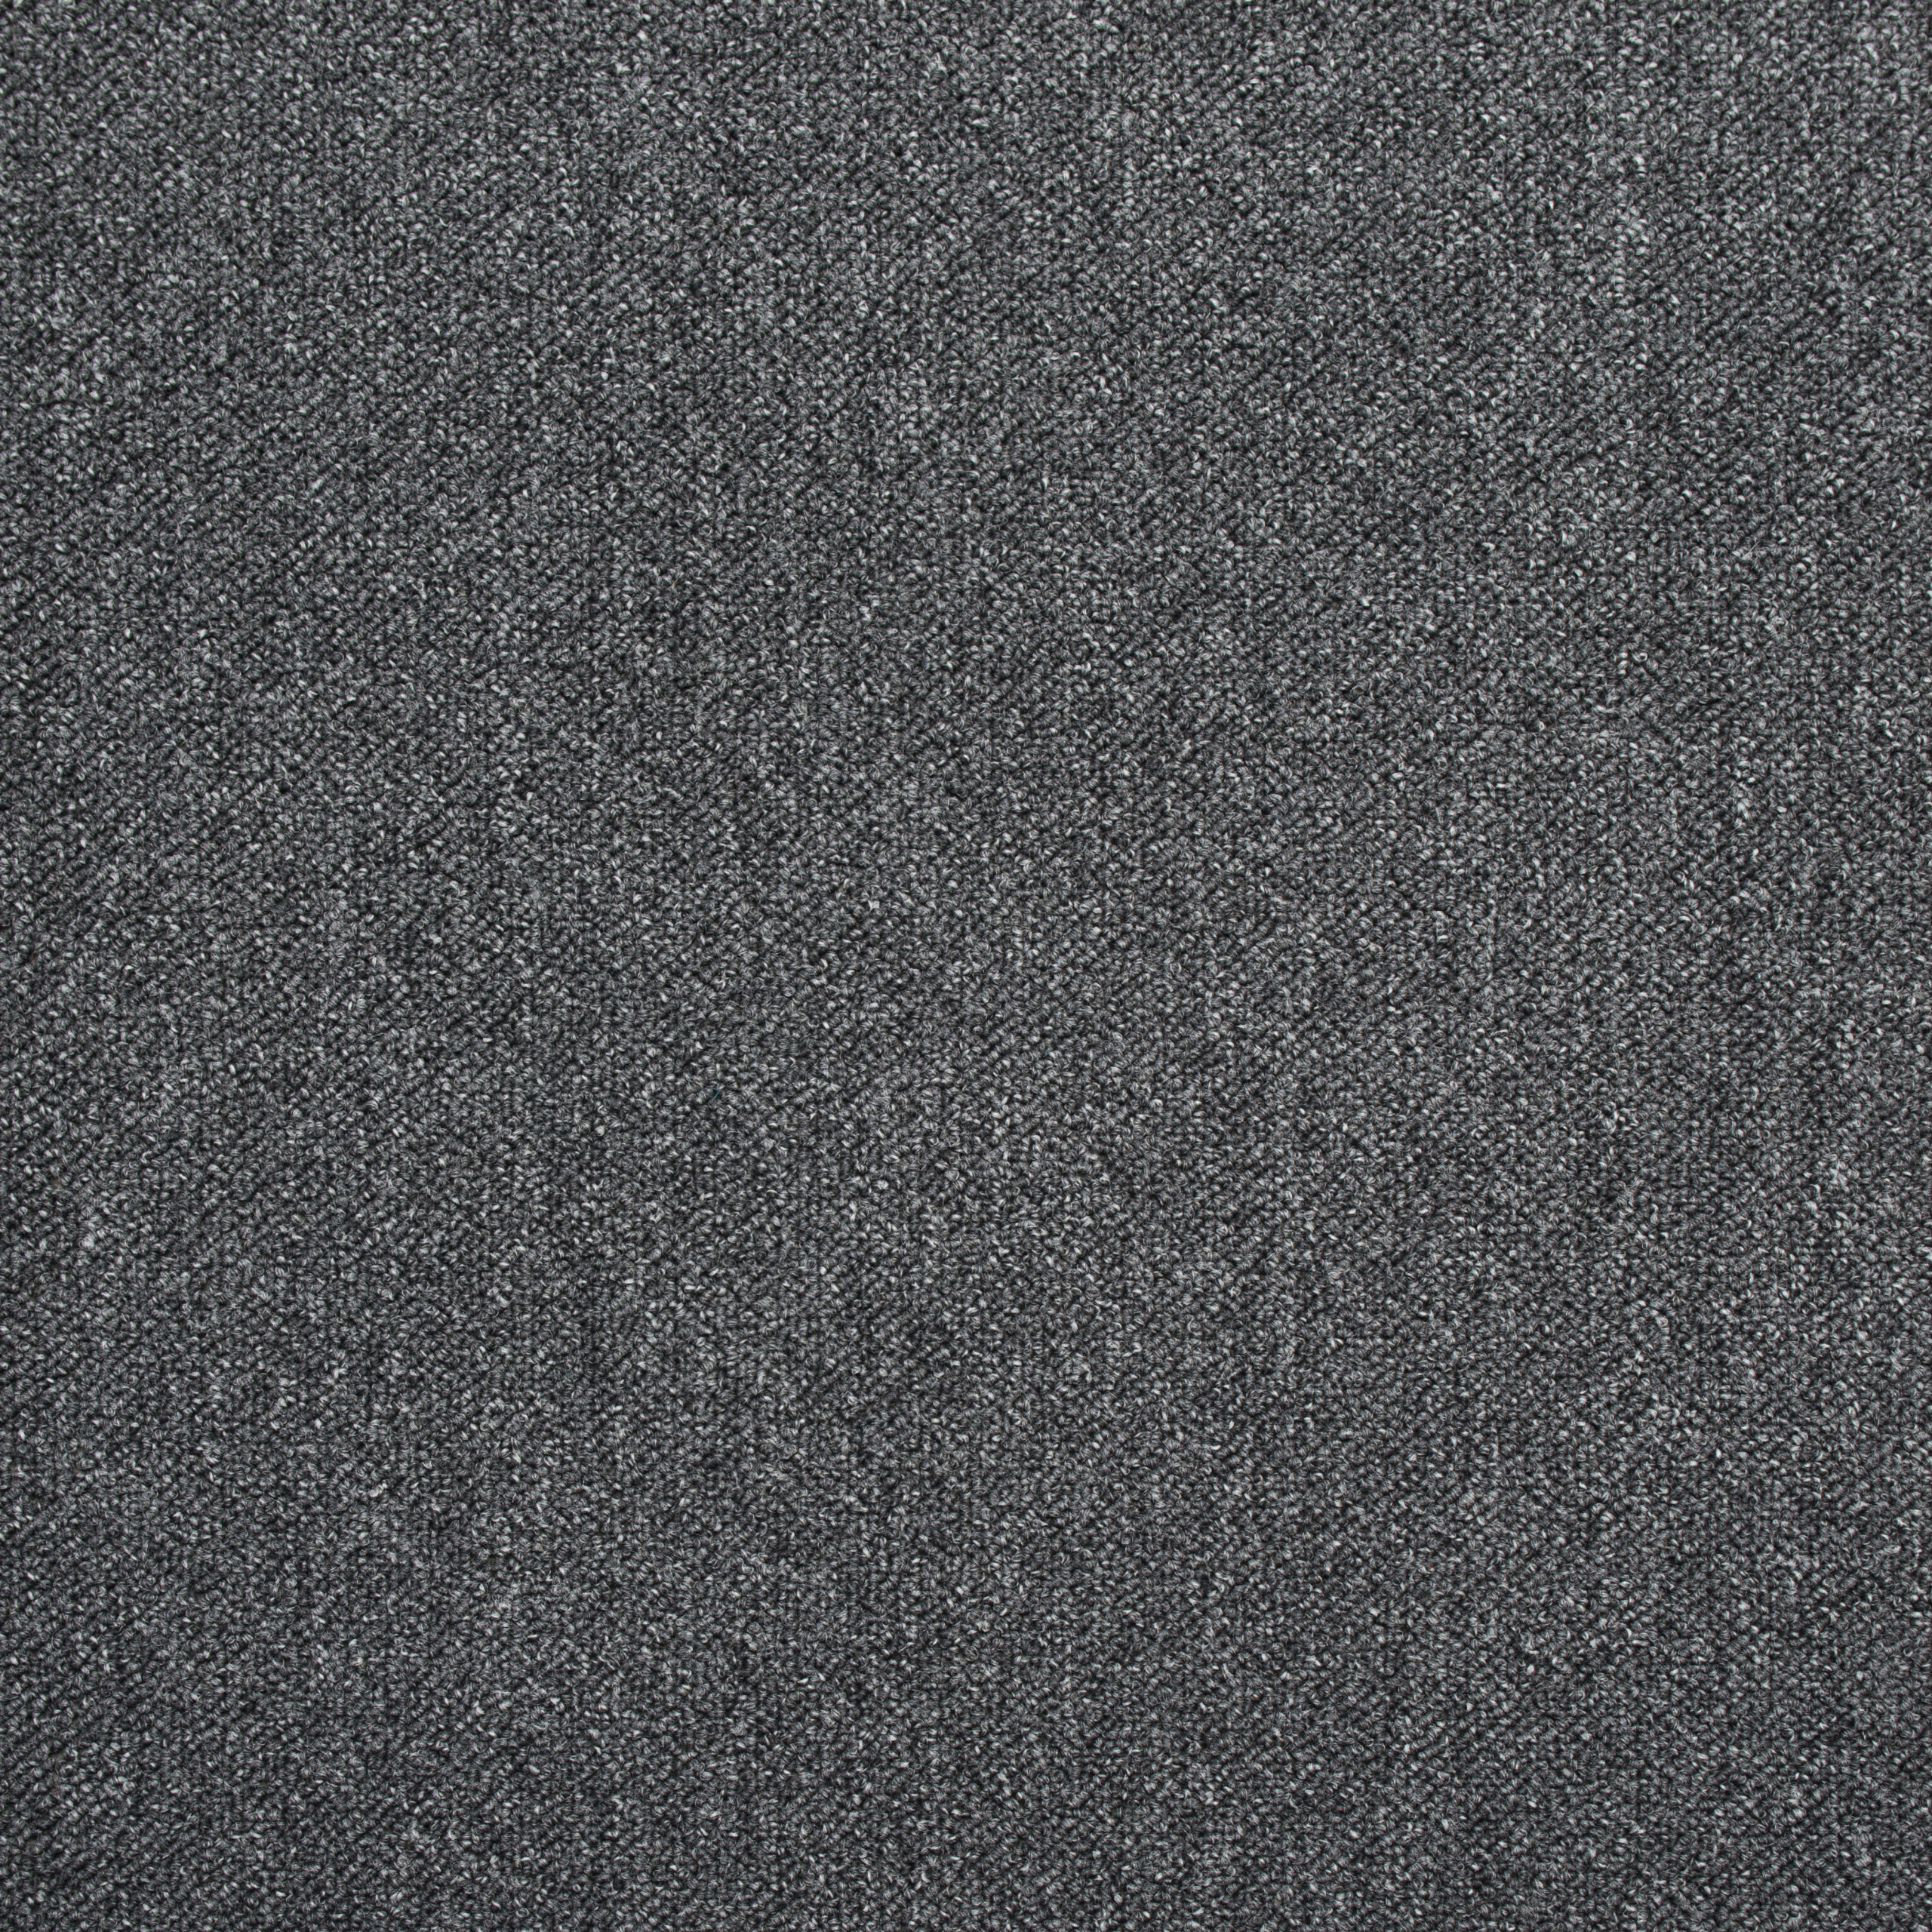 Kobercové čtverce CREATIVE SPARK tmavě šedé 50x50 cm